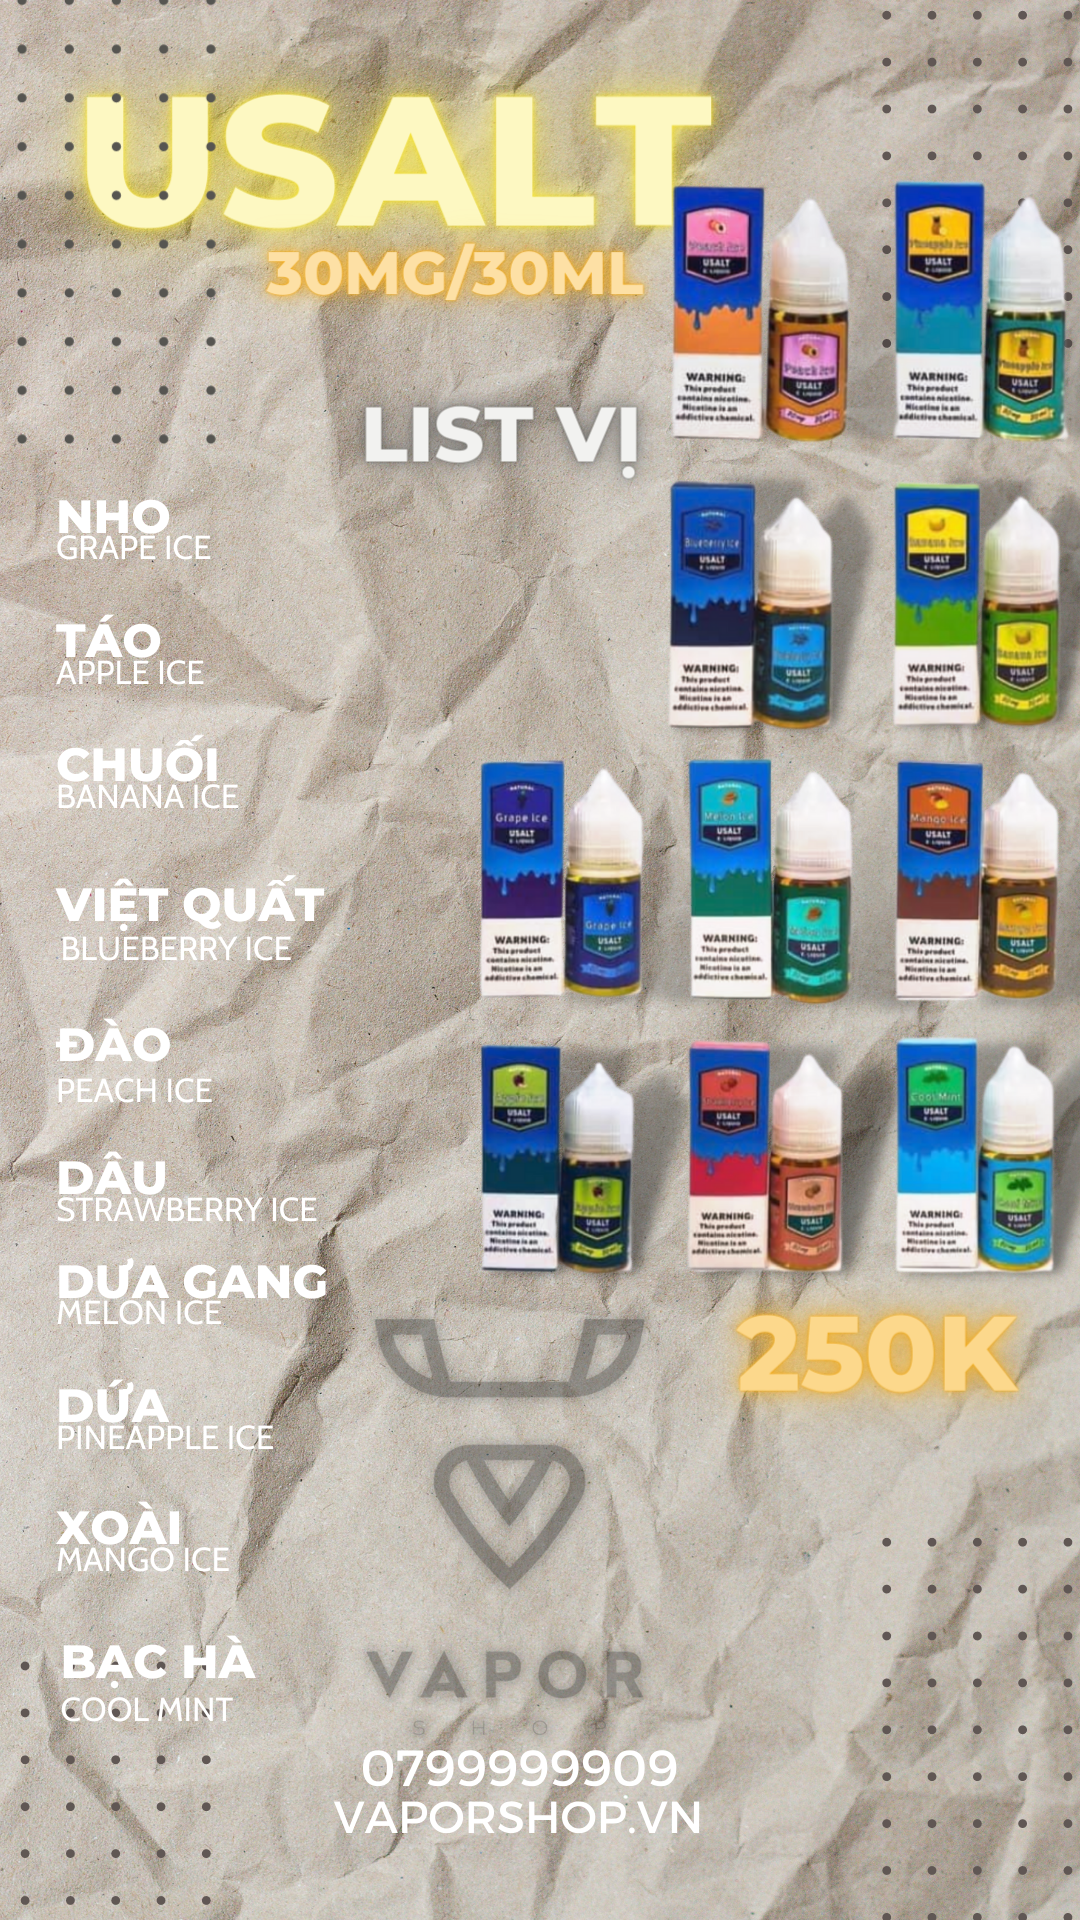 List mùi Top 10 Tinh dầu pod Usalt ELiquid Premium Salt-Nic 30ml đang được ưa chuộng nhất tại Vaporshop 